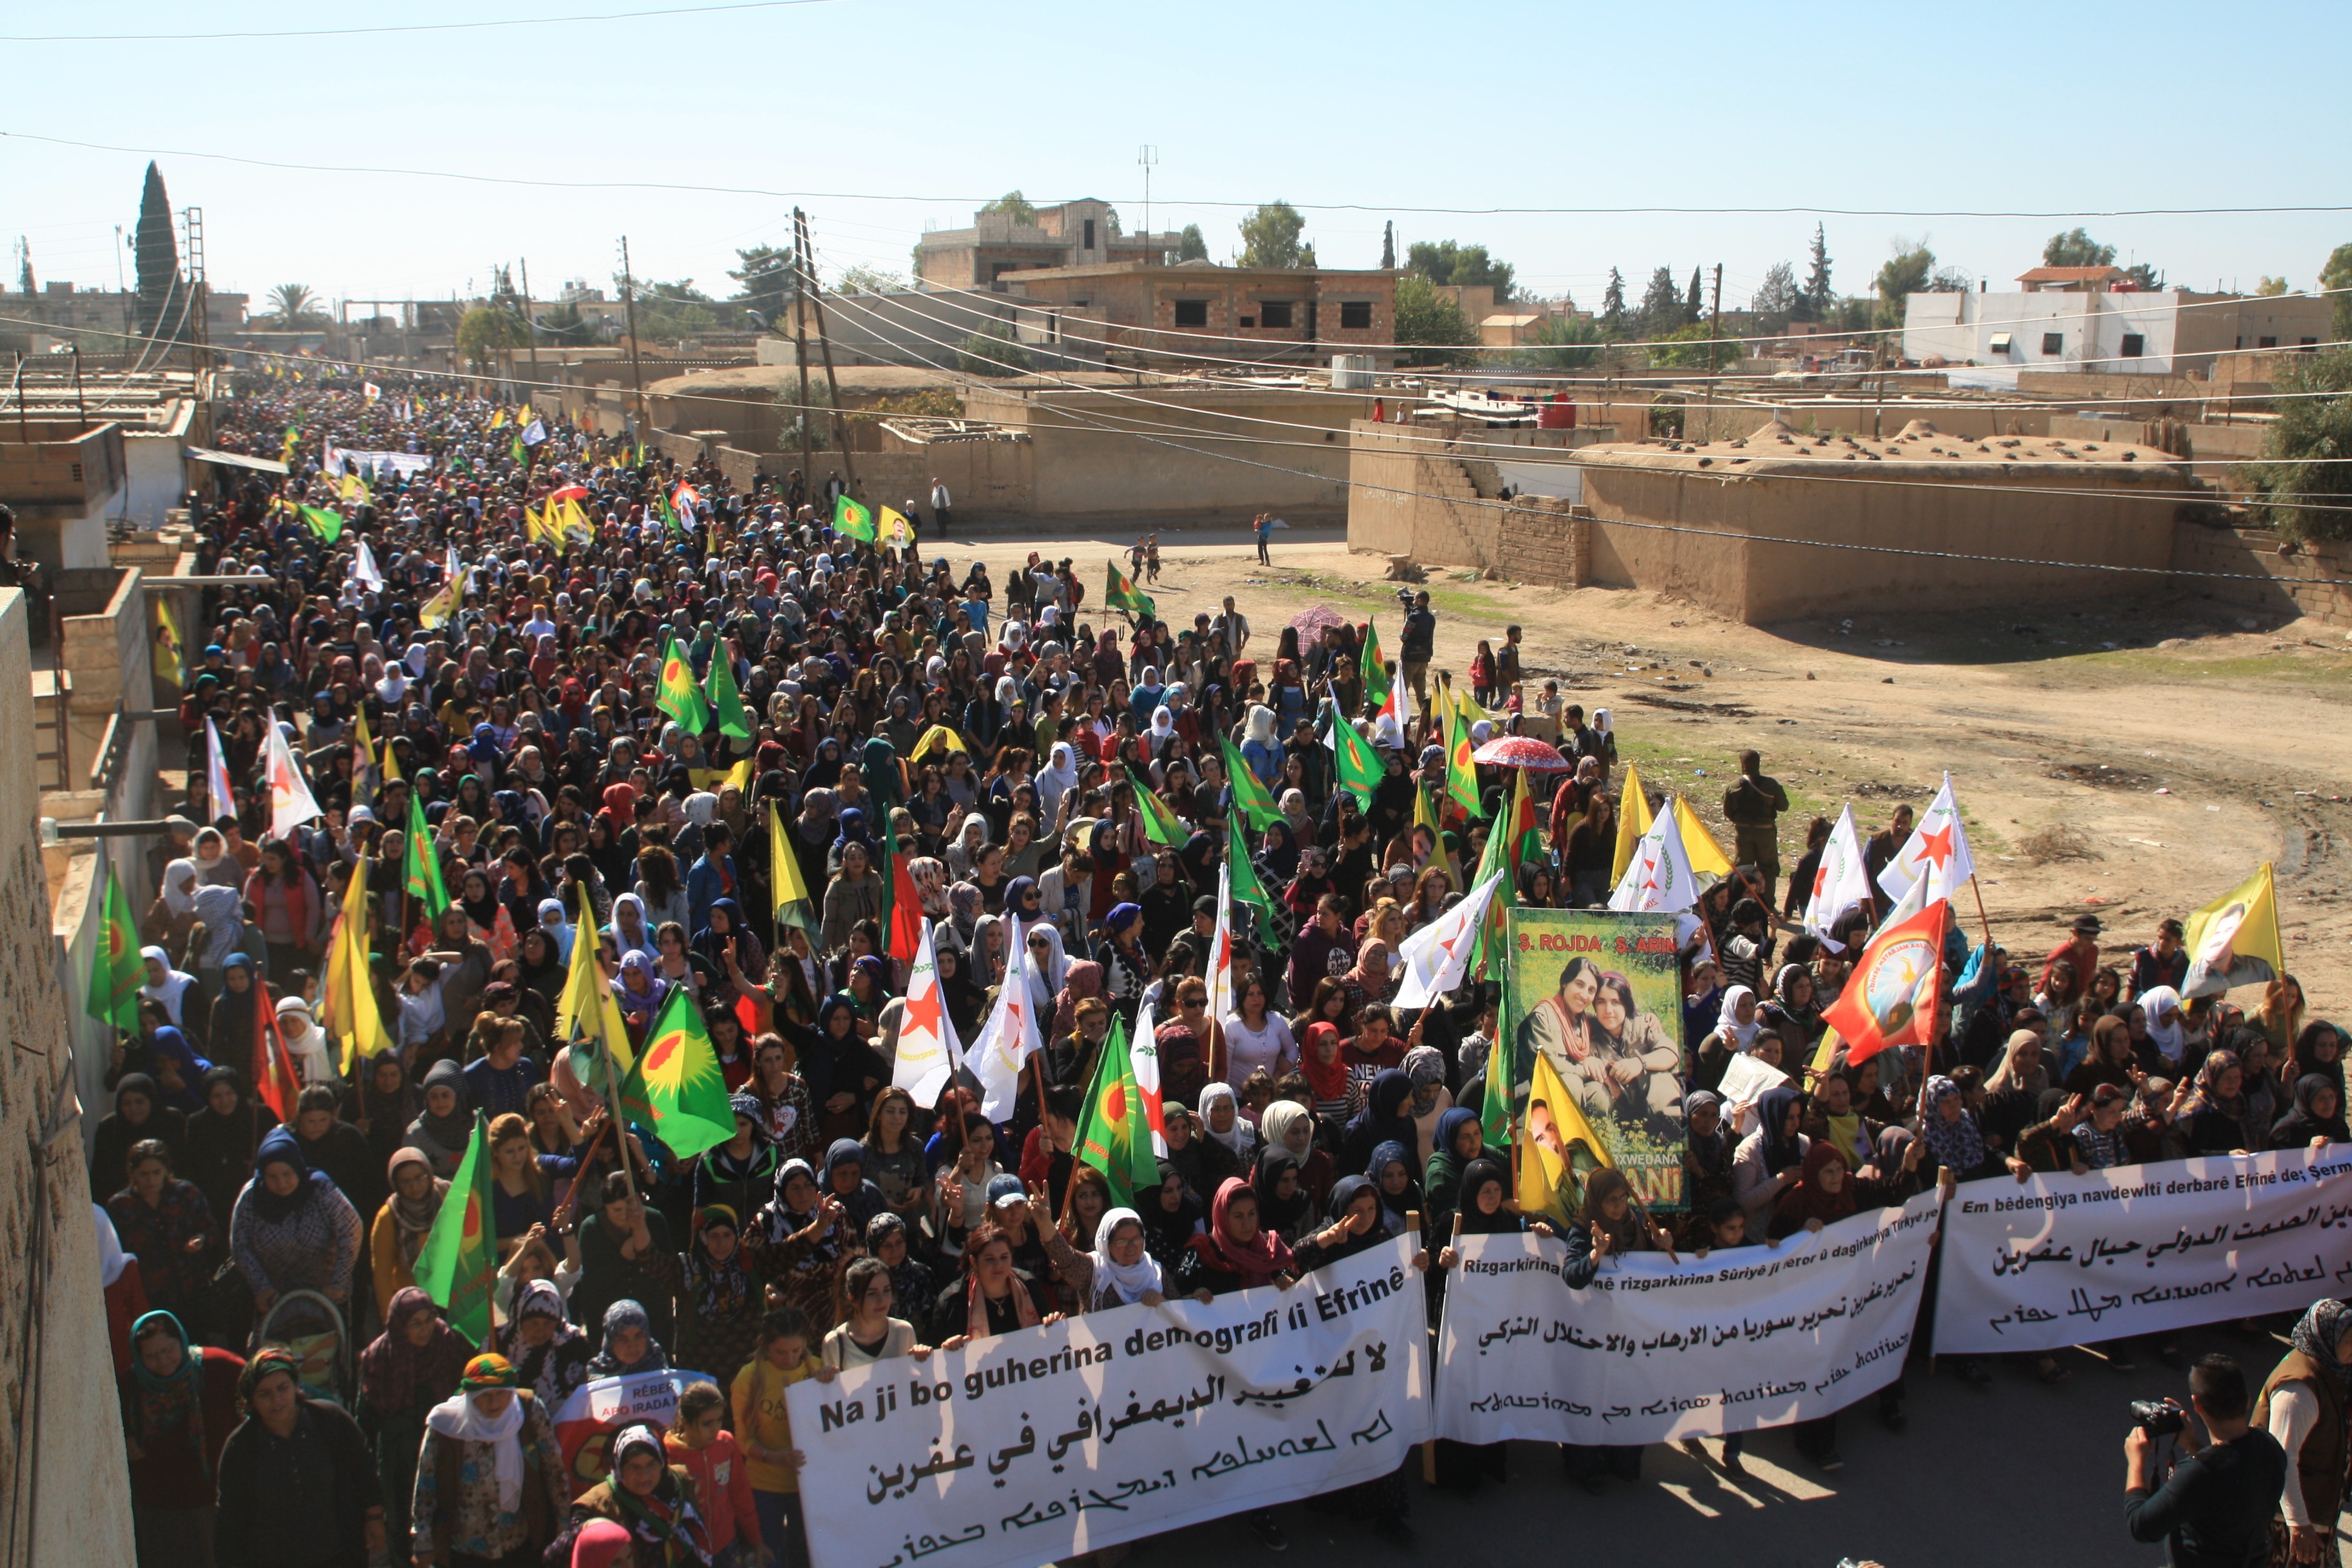 Mit dem Geist des Kampfes von Kobane werden wir den internationalen Befreiungskampf gewinnen!